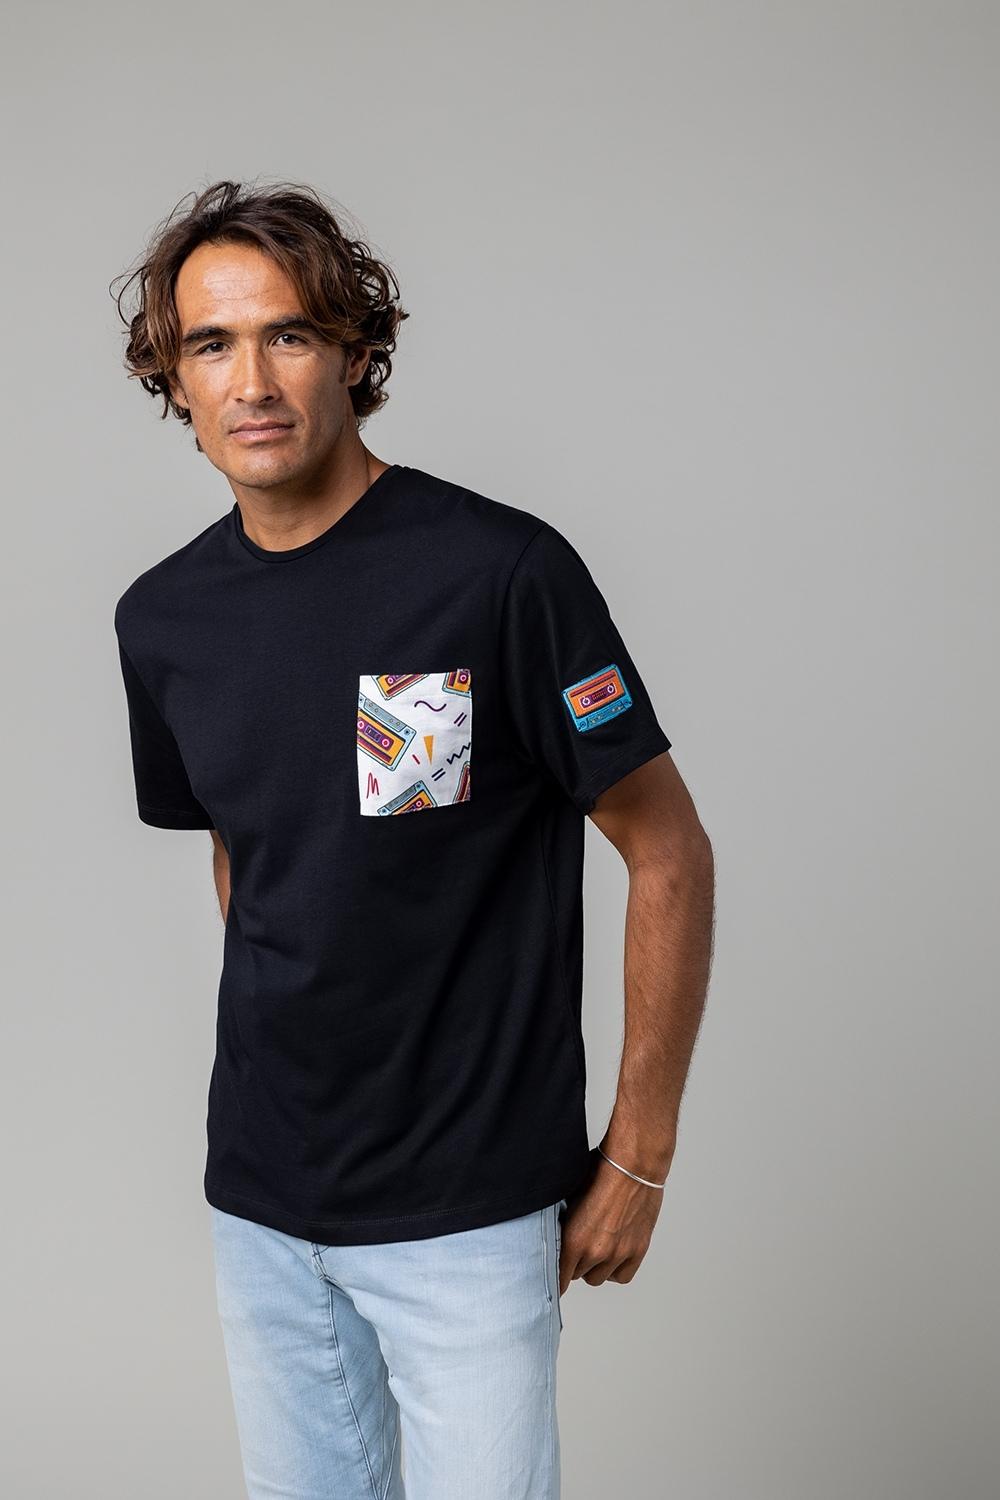 T-shirt / homme / éco-responsable / coton bio / imprimé K7 / Broderie / Retro